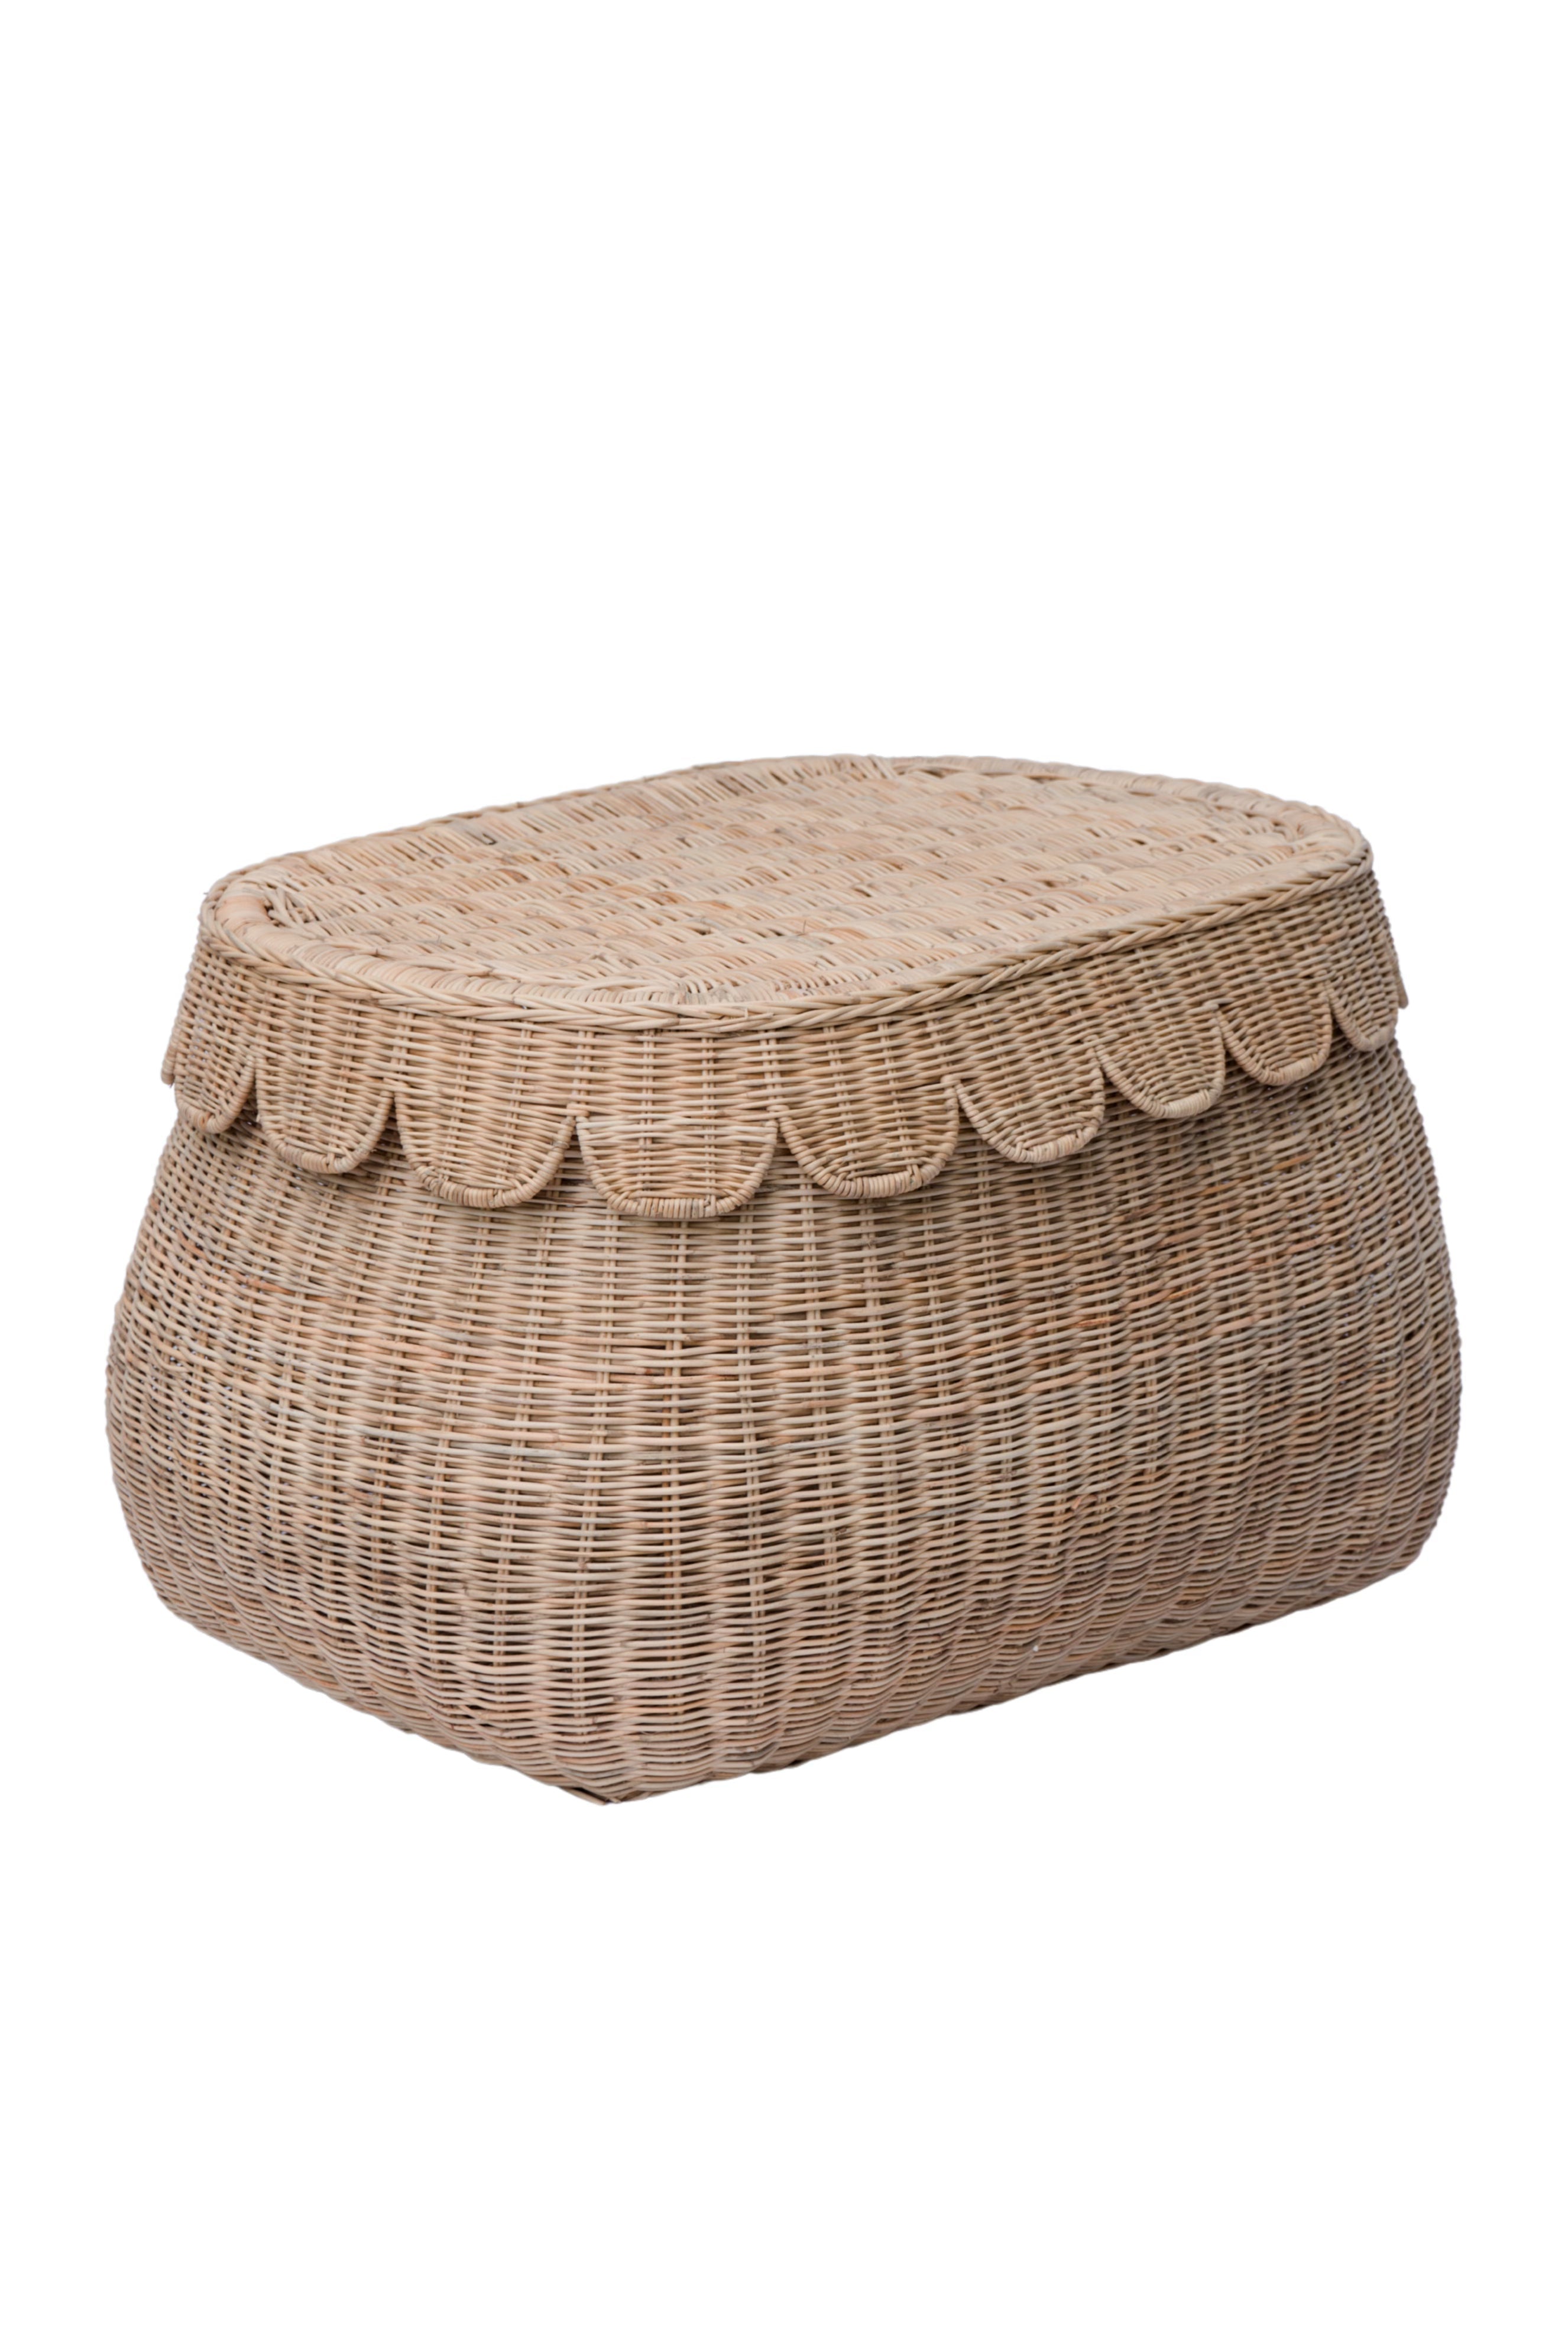 Scalloped Rattan Basket - Small - Pre-Sale